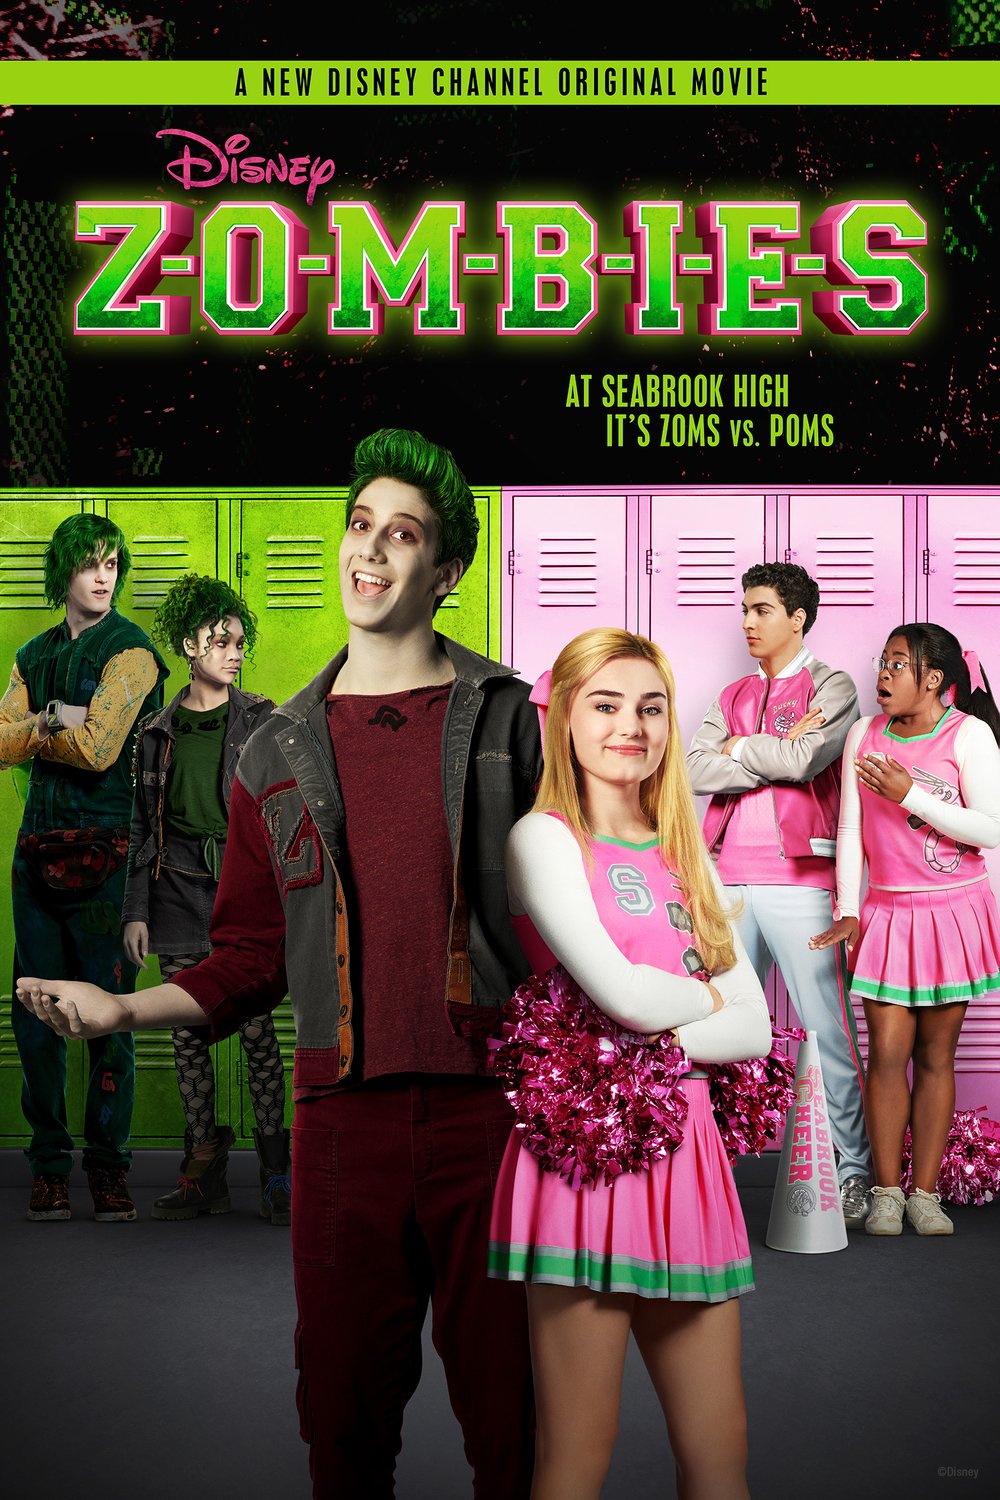 L'affiche du film Zombies